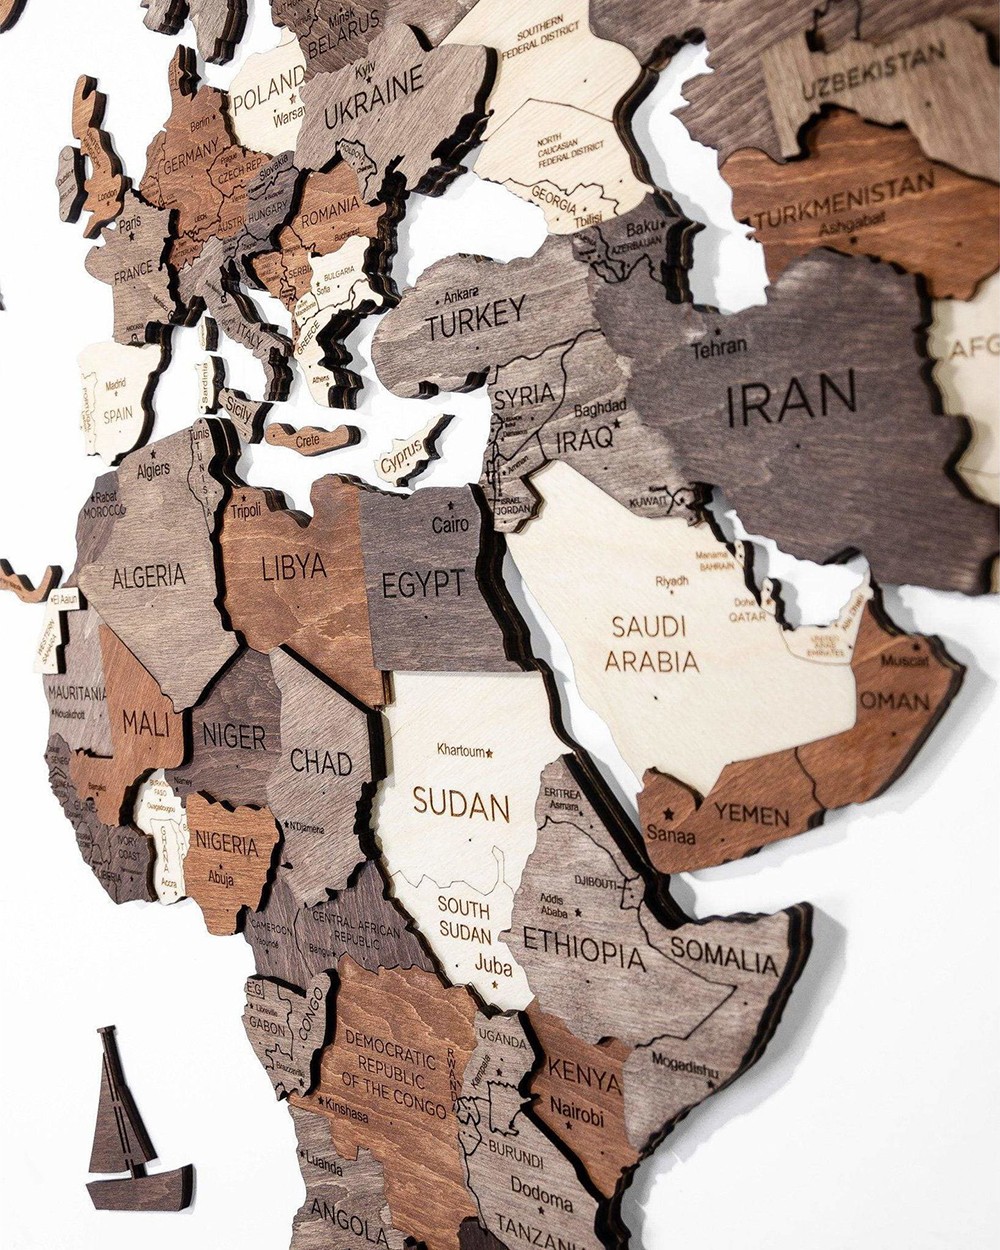 Peta wodden dinding 3D dengan negara